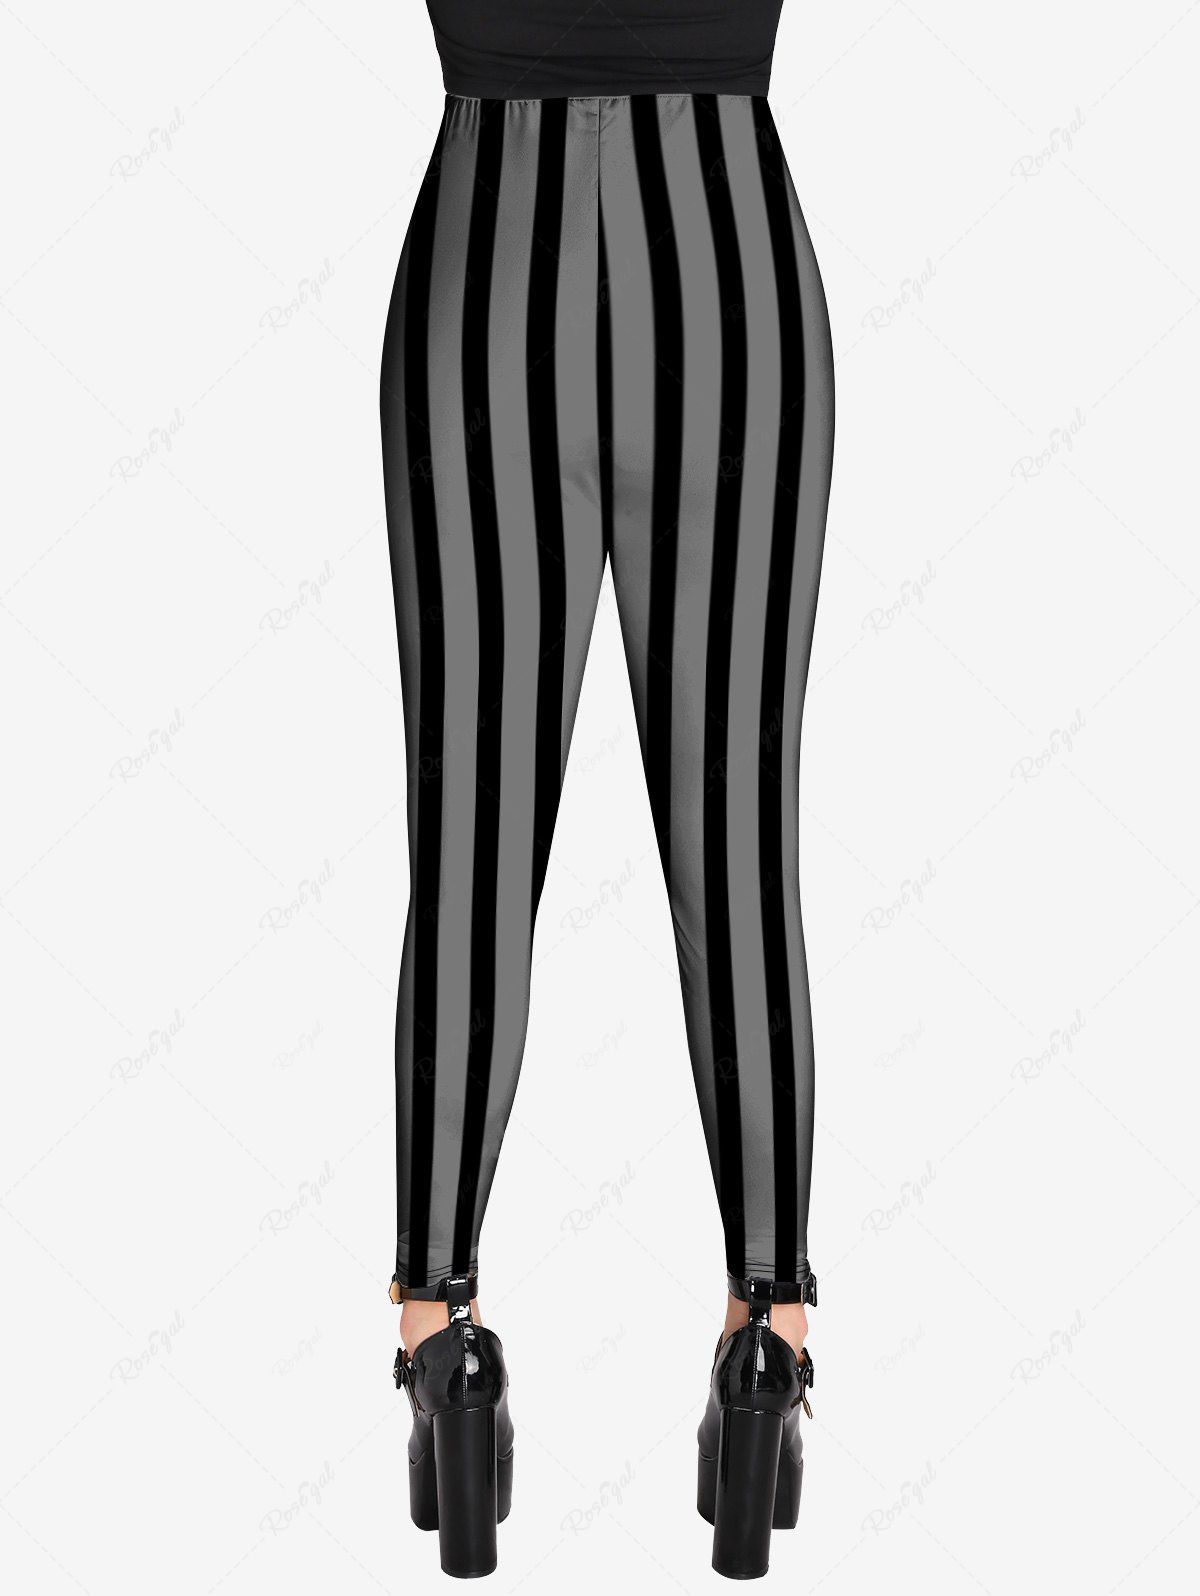 💗Lauren Loves💗 Gothic Striped Print Skinny Leggings